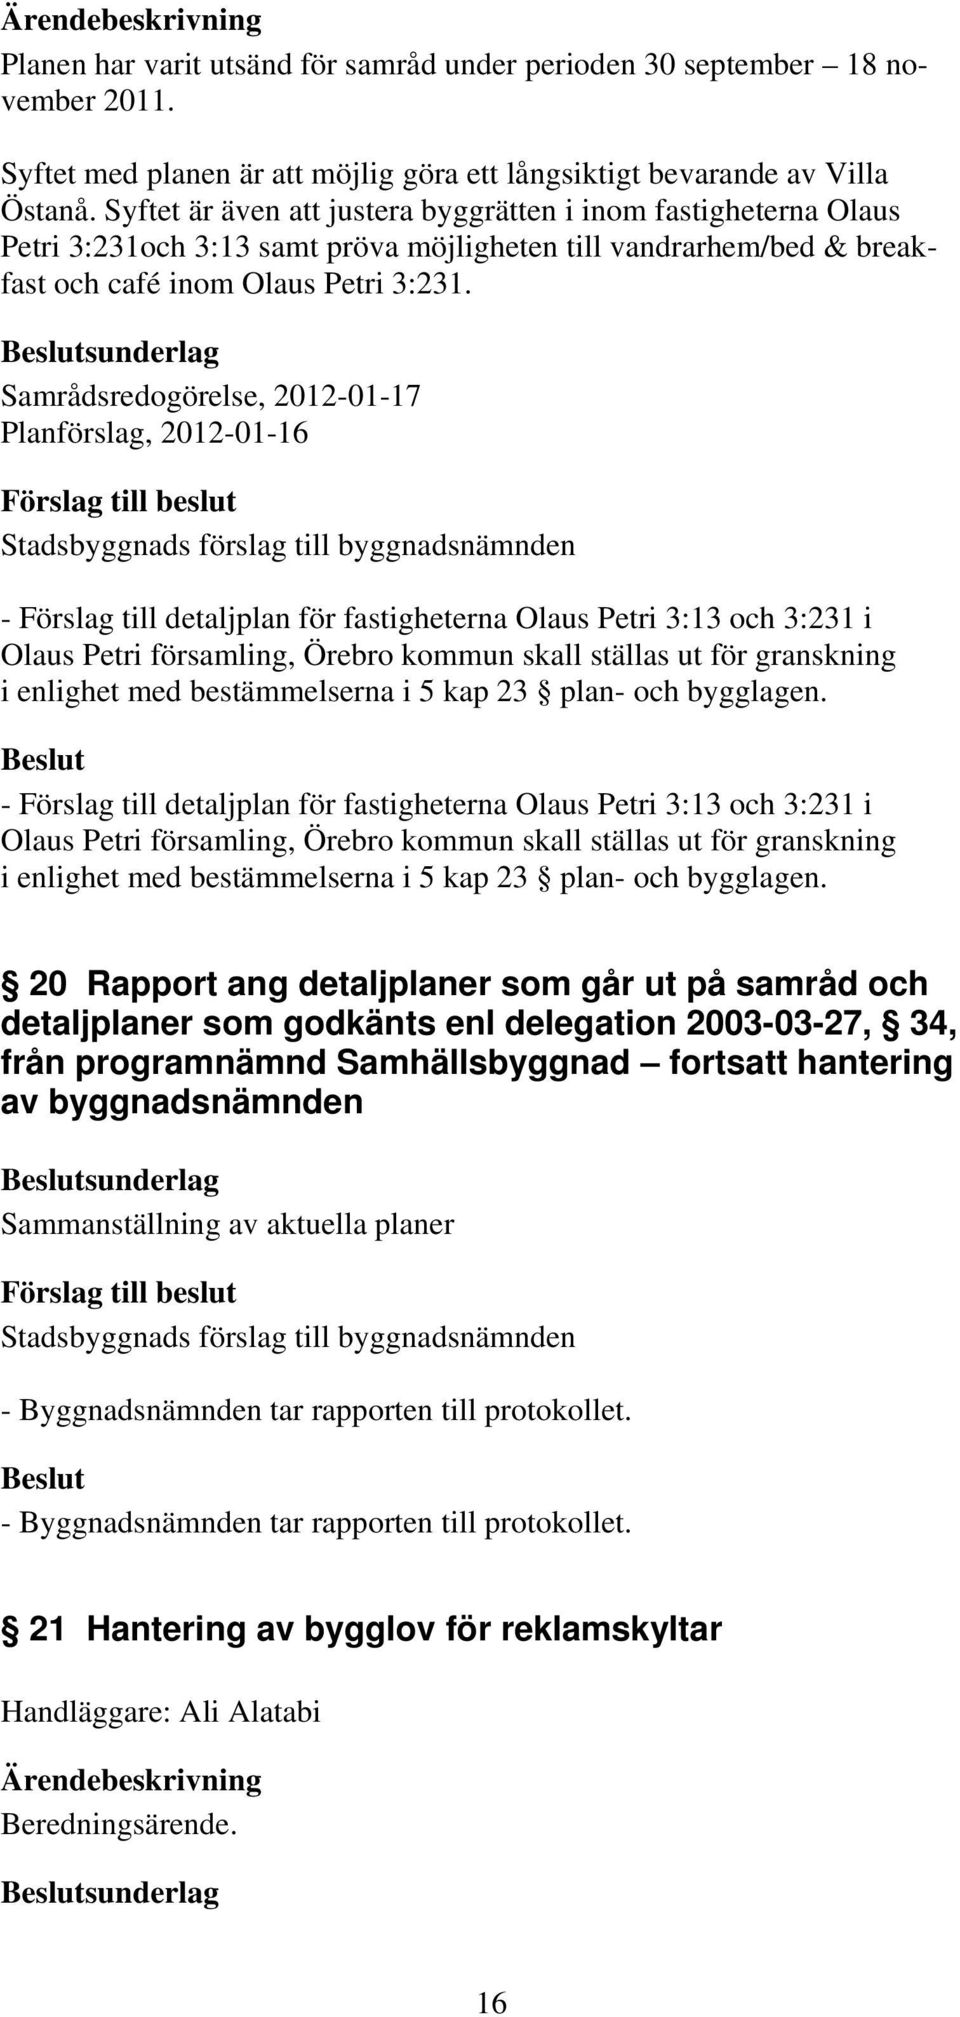 sunderlag Samrådsredogörelse, 2012-01-17 Planförslag, 2012-01-16 - Förslag till detaljplan för fastigheterna Olaus Petri 3:13 och 3:231 i Olaus Petri församling, Örebro kommun skall ställas ut för